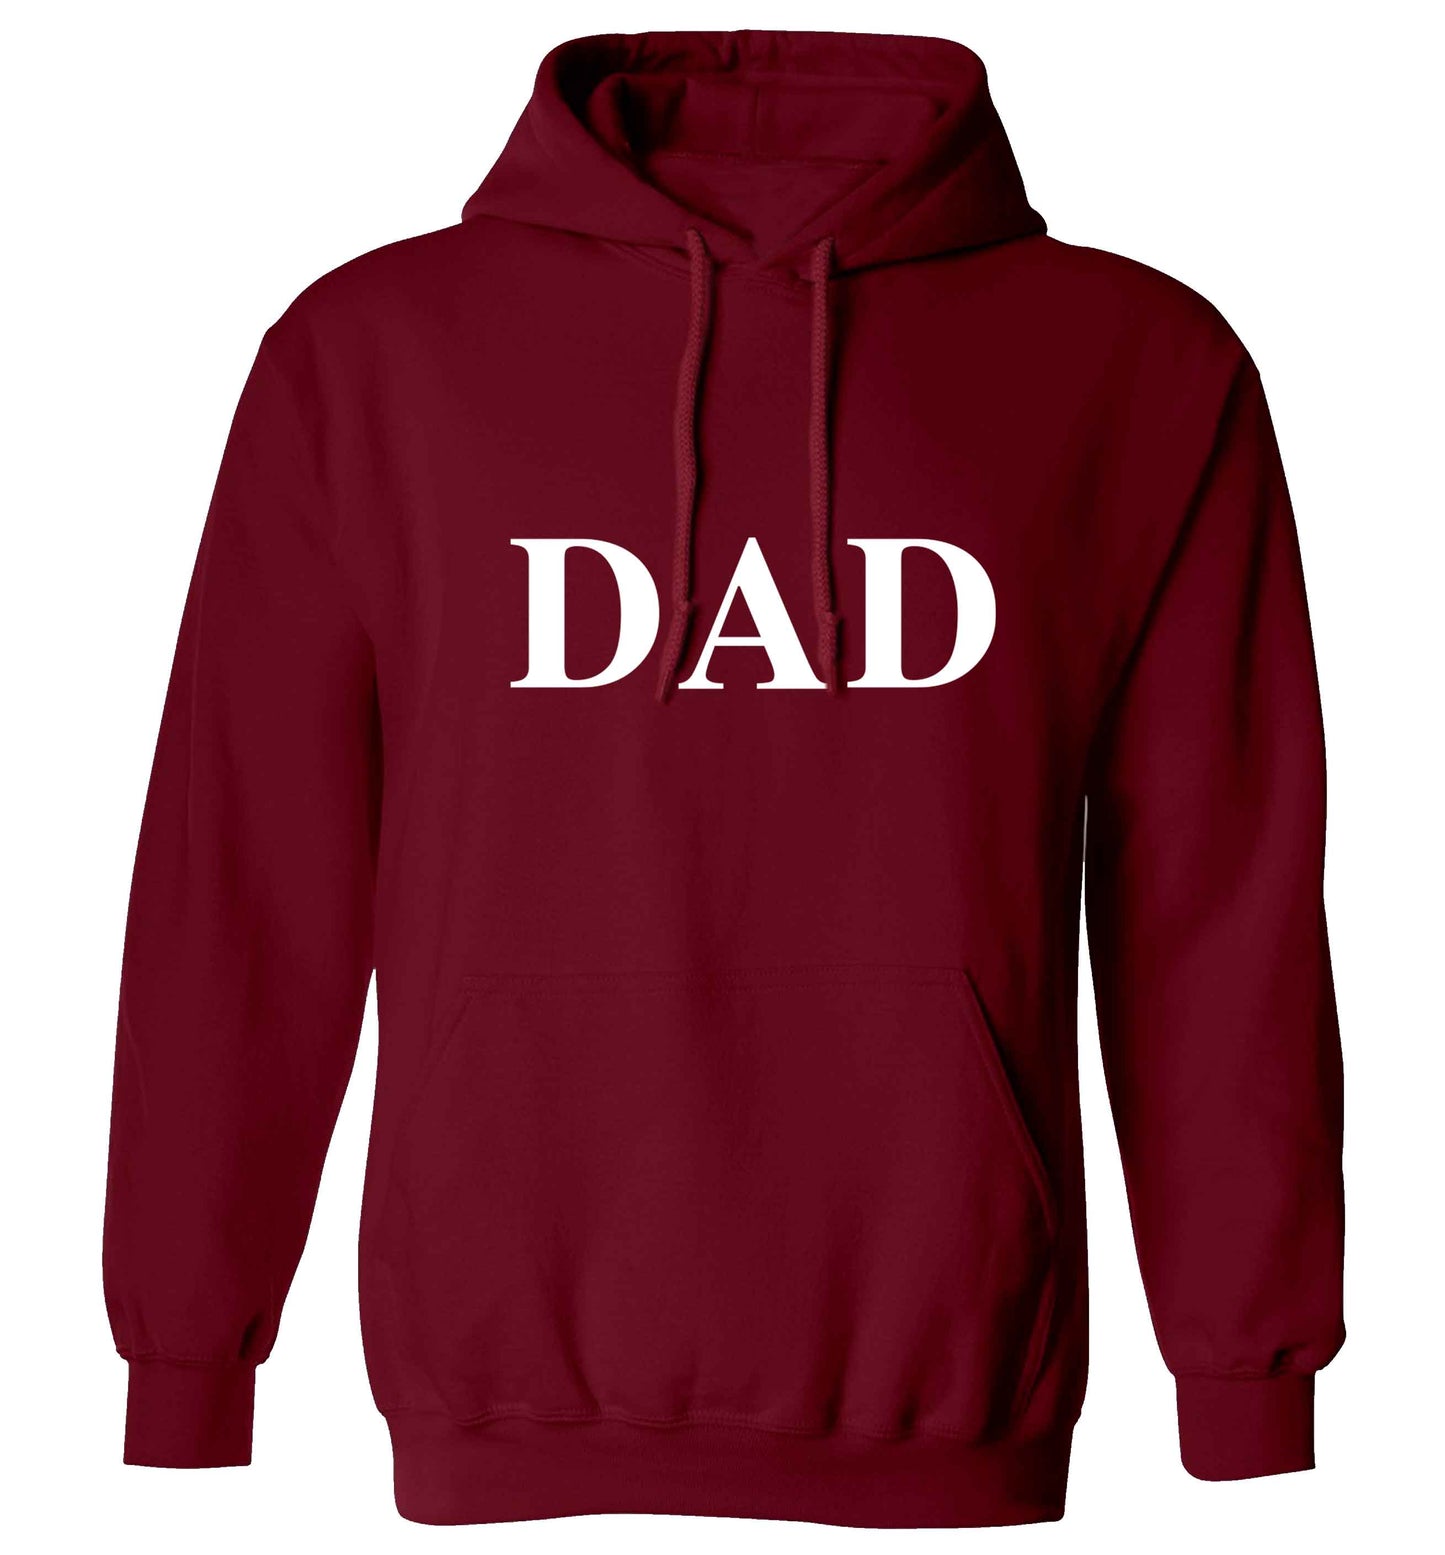 Dad adults unisex maroon hoodie 2XL